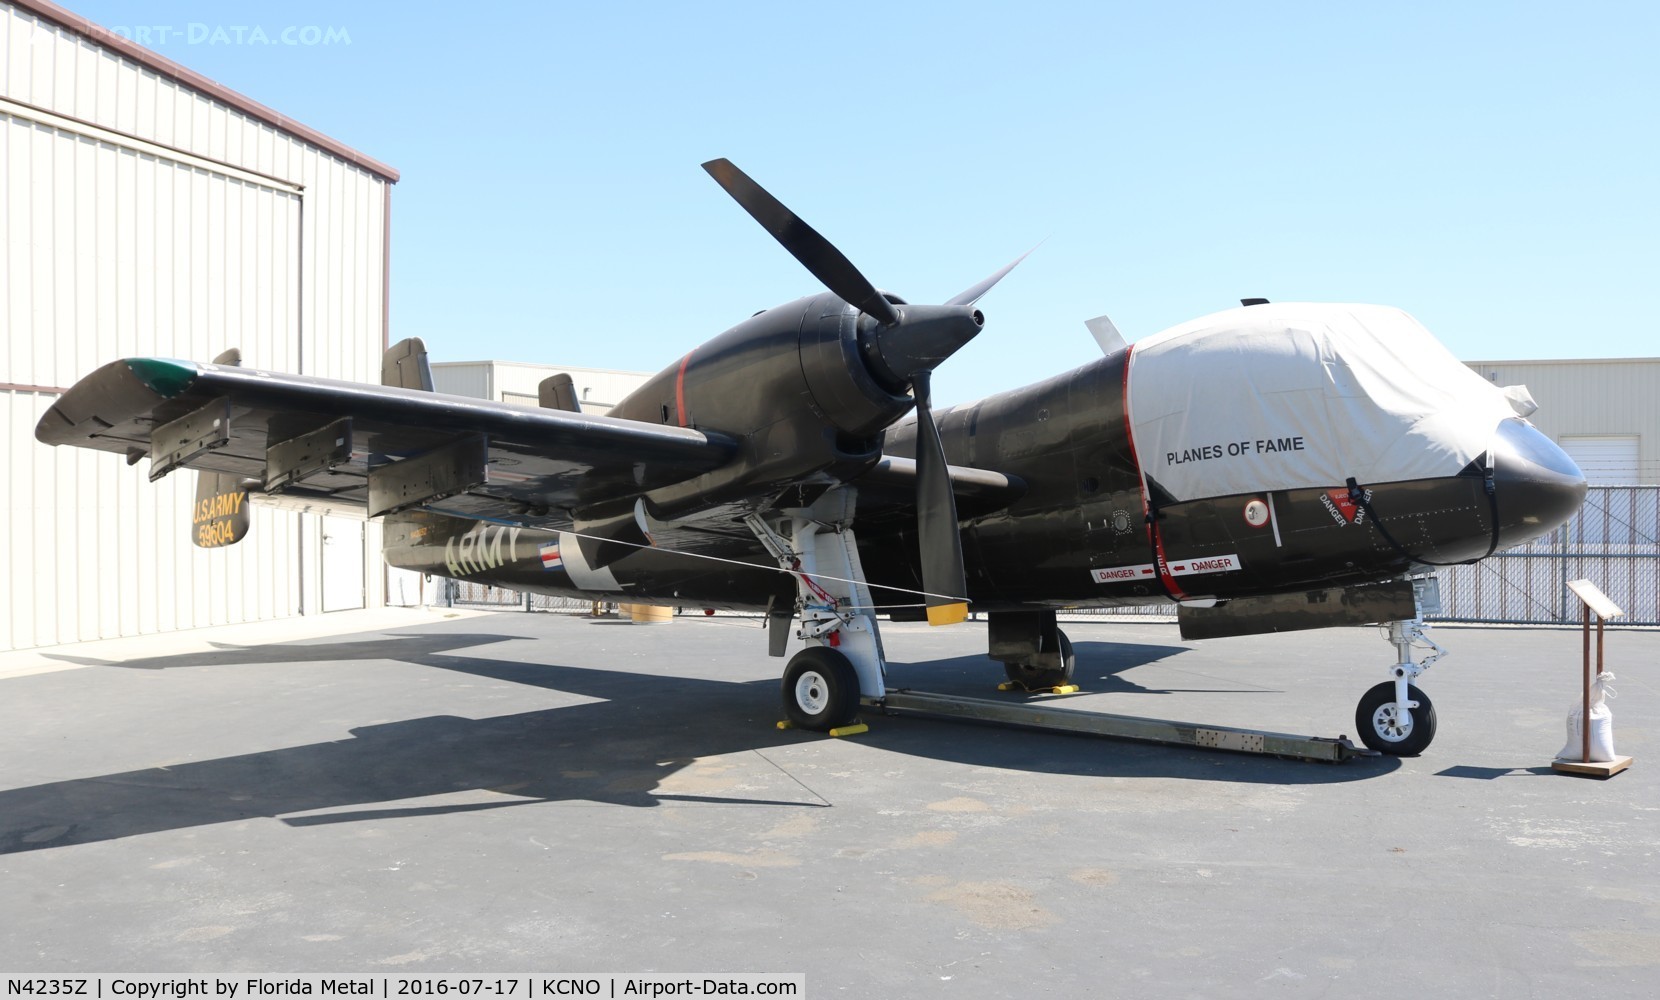 N4235Z, 1959 Grumman OV-1A Mohawk C/N Not found (2), Planes of Fame